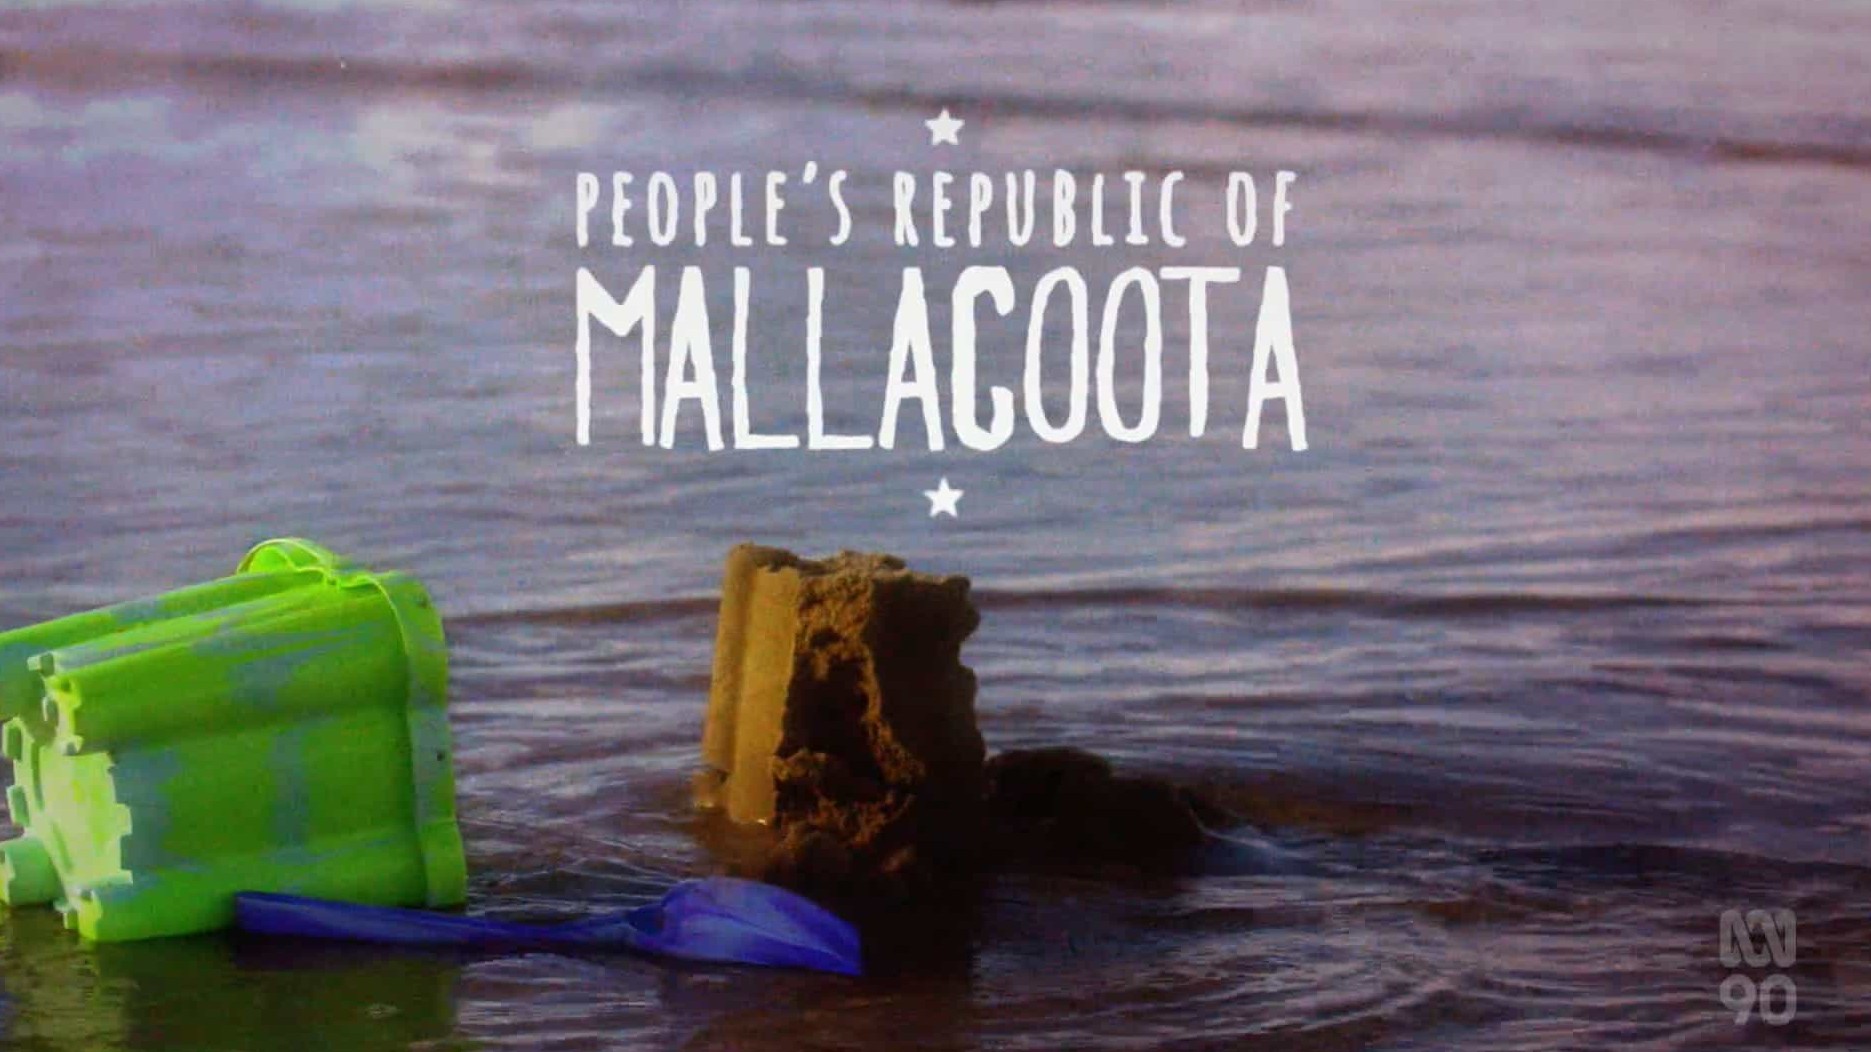 澳大利亚纪录片《马拉库塔人民共和国 People